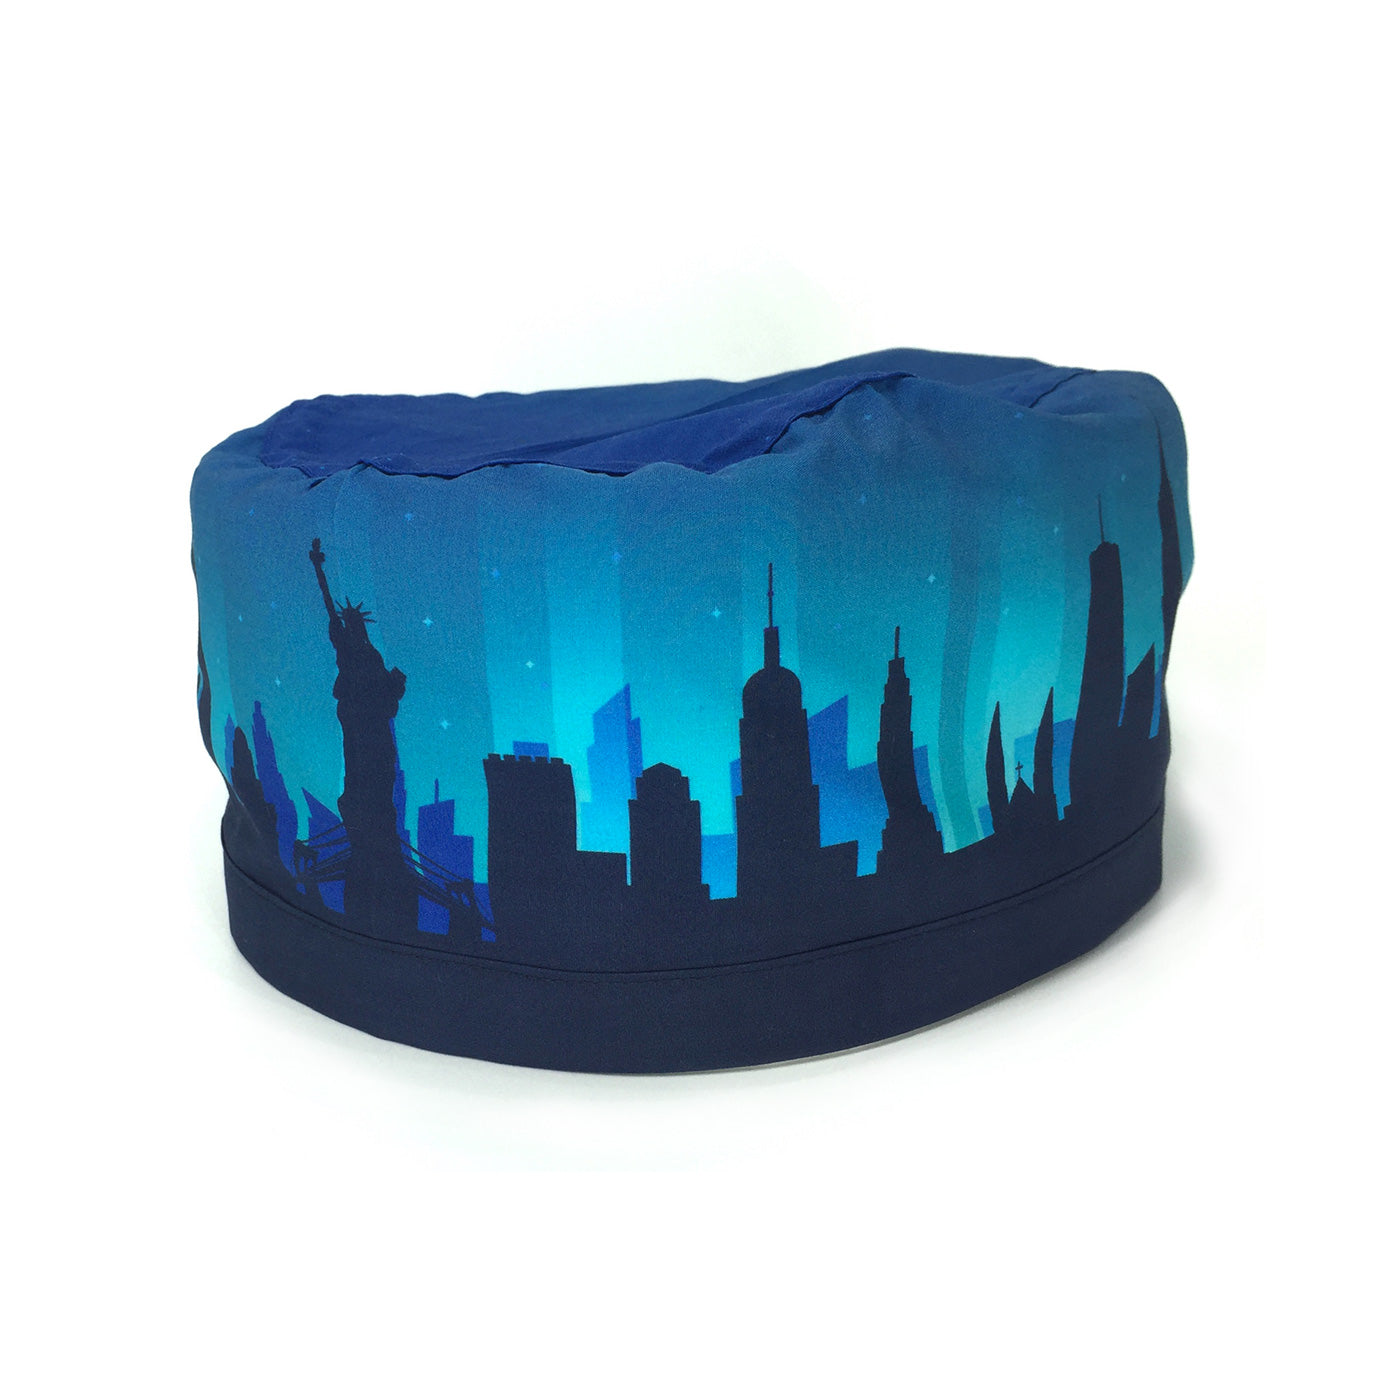 Cuffietta chirurgica blu con lo skyline di New York che si staglia su uno sfondo azzurro